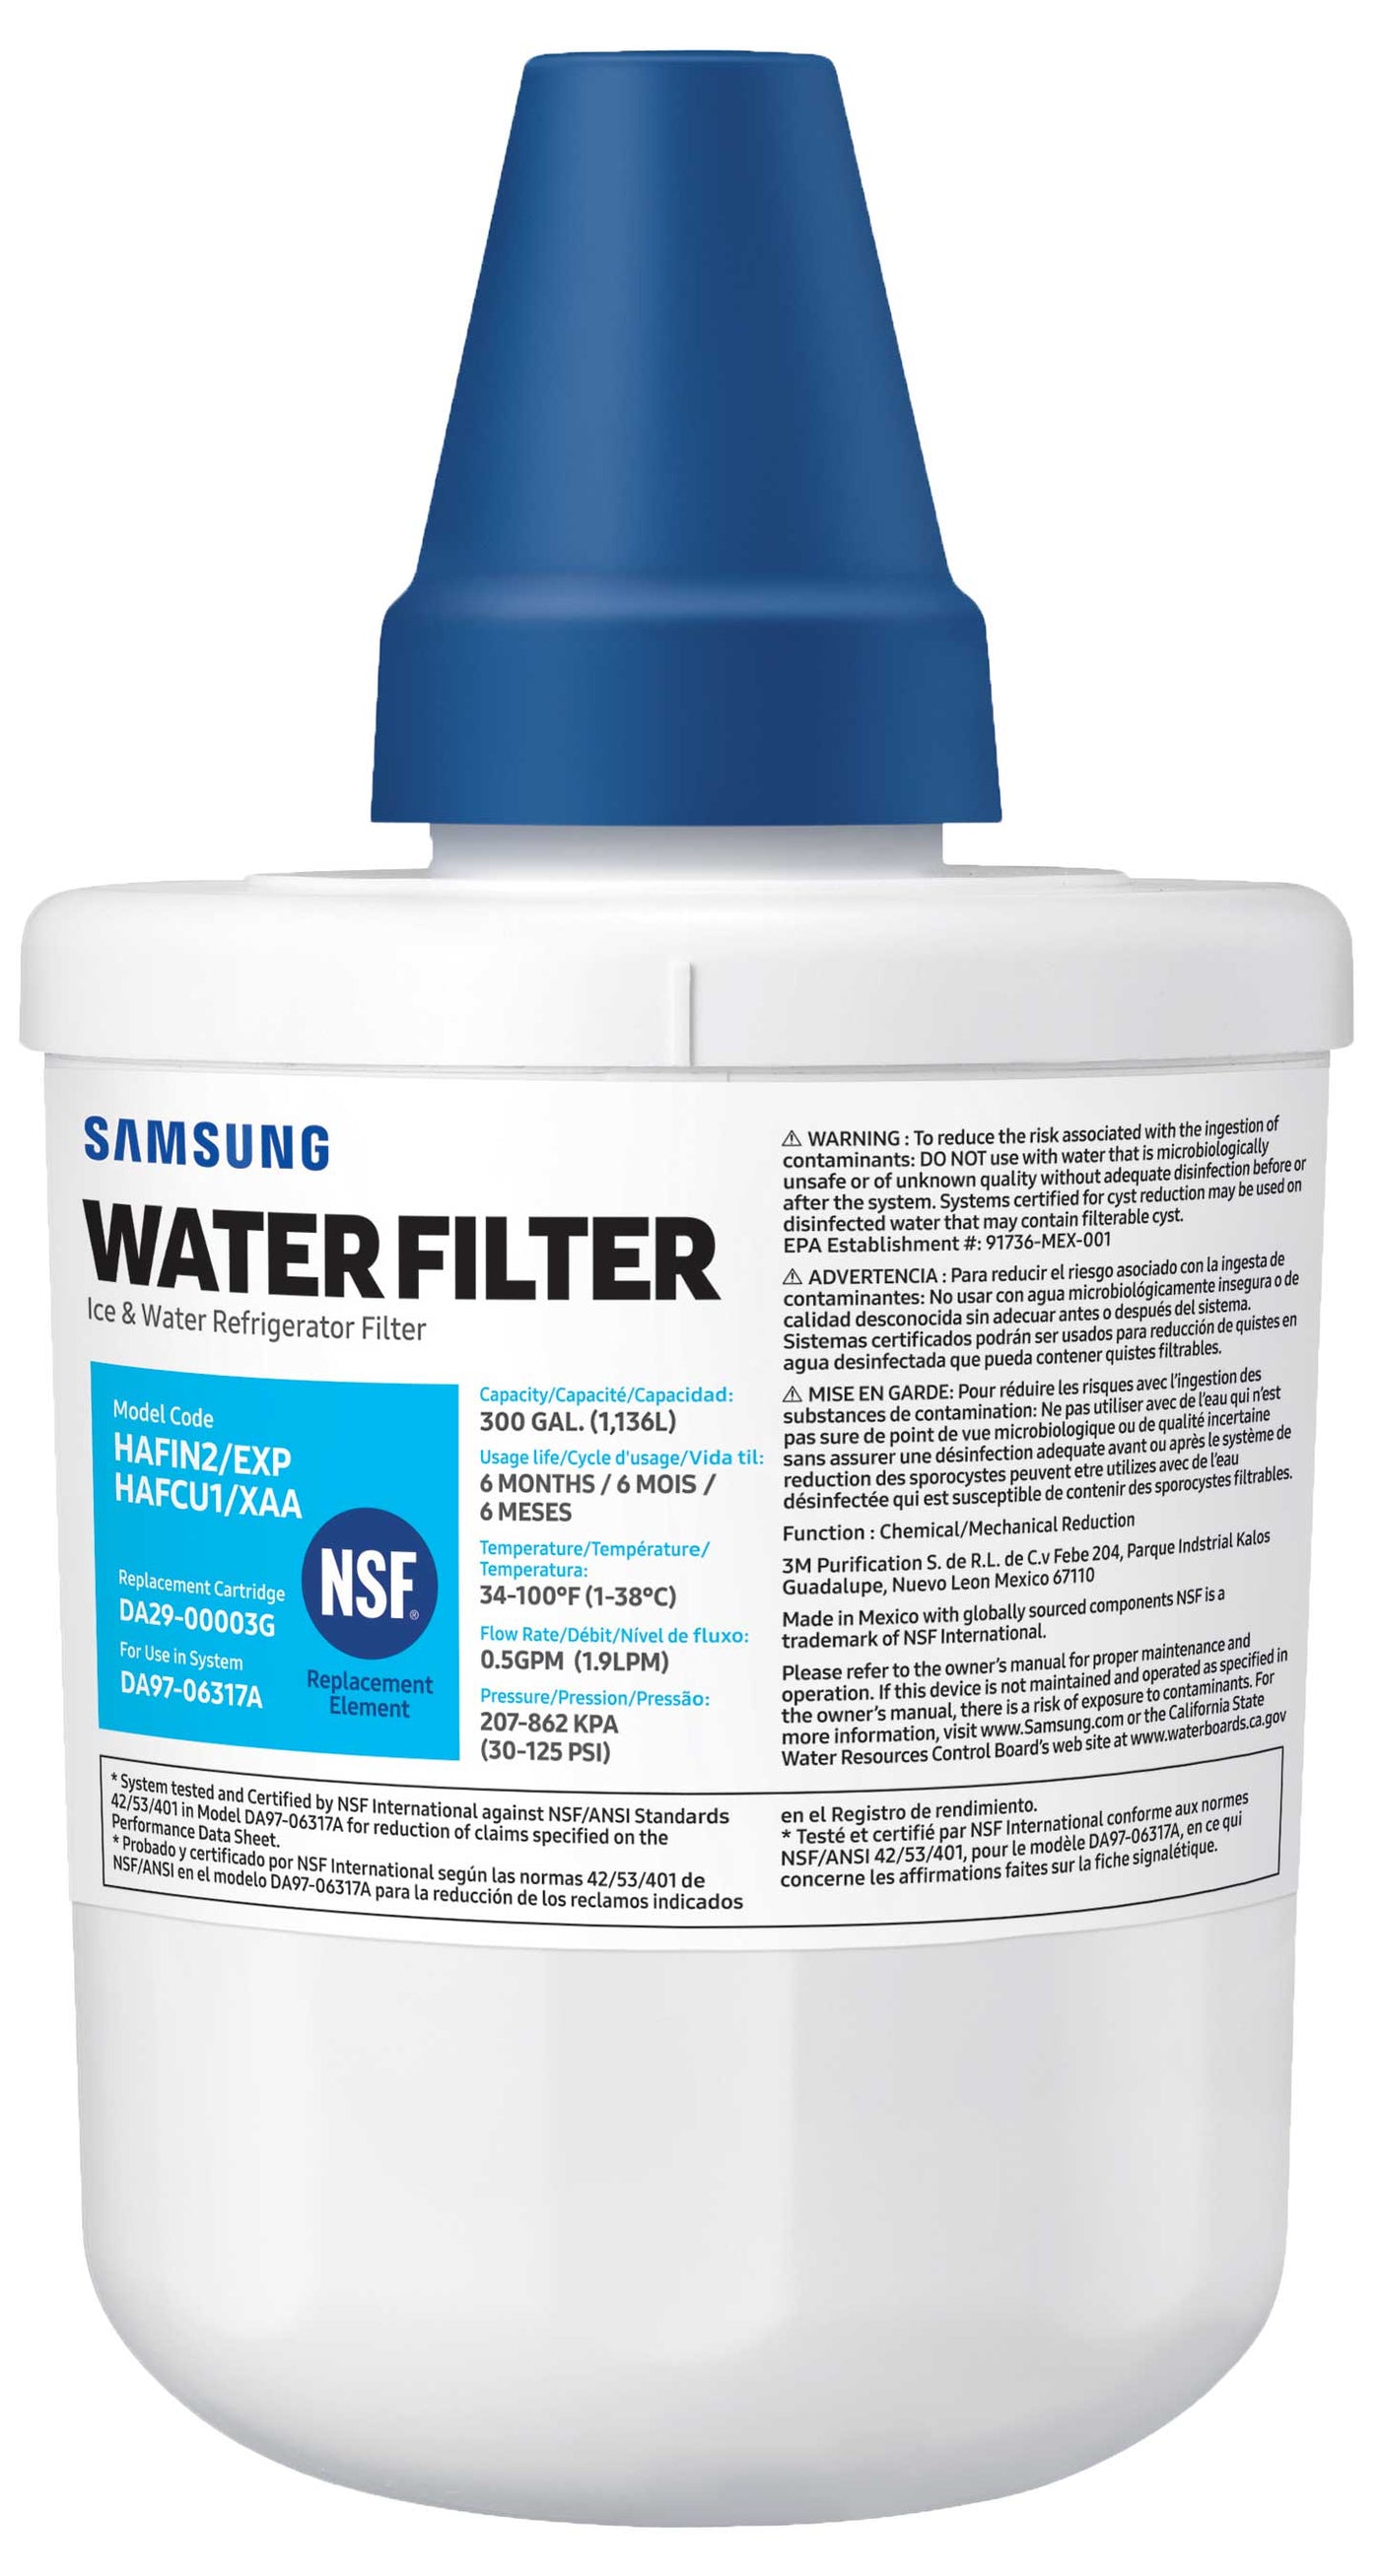 Samsung Water Filter - HAFCU1/XAA